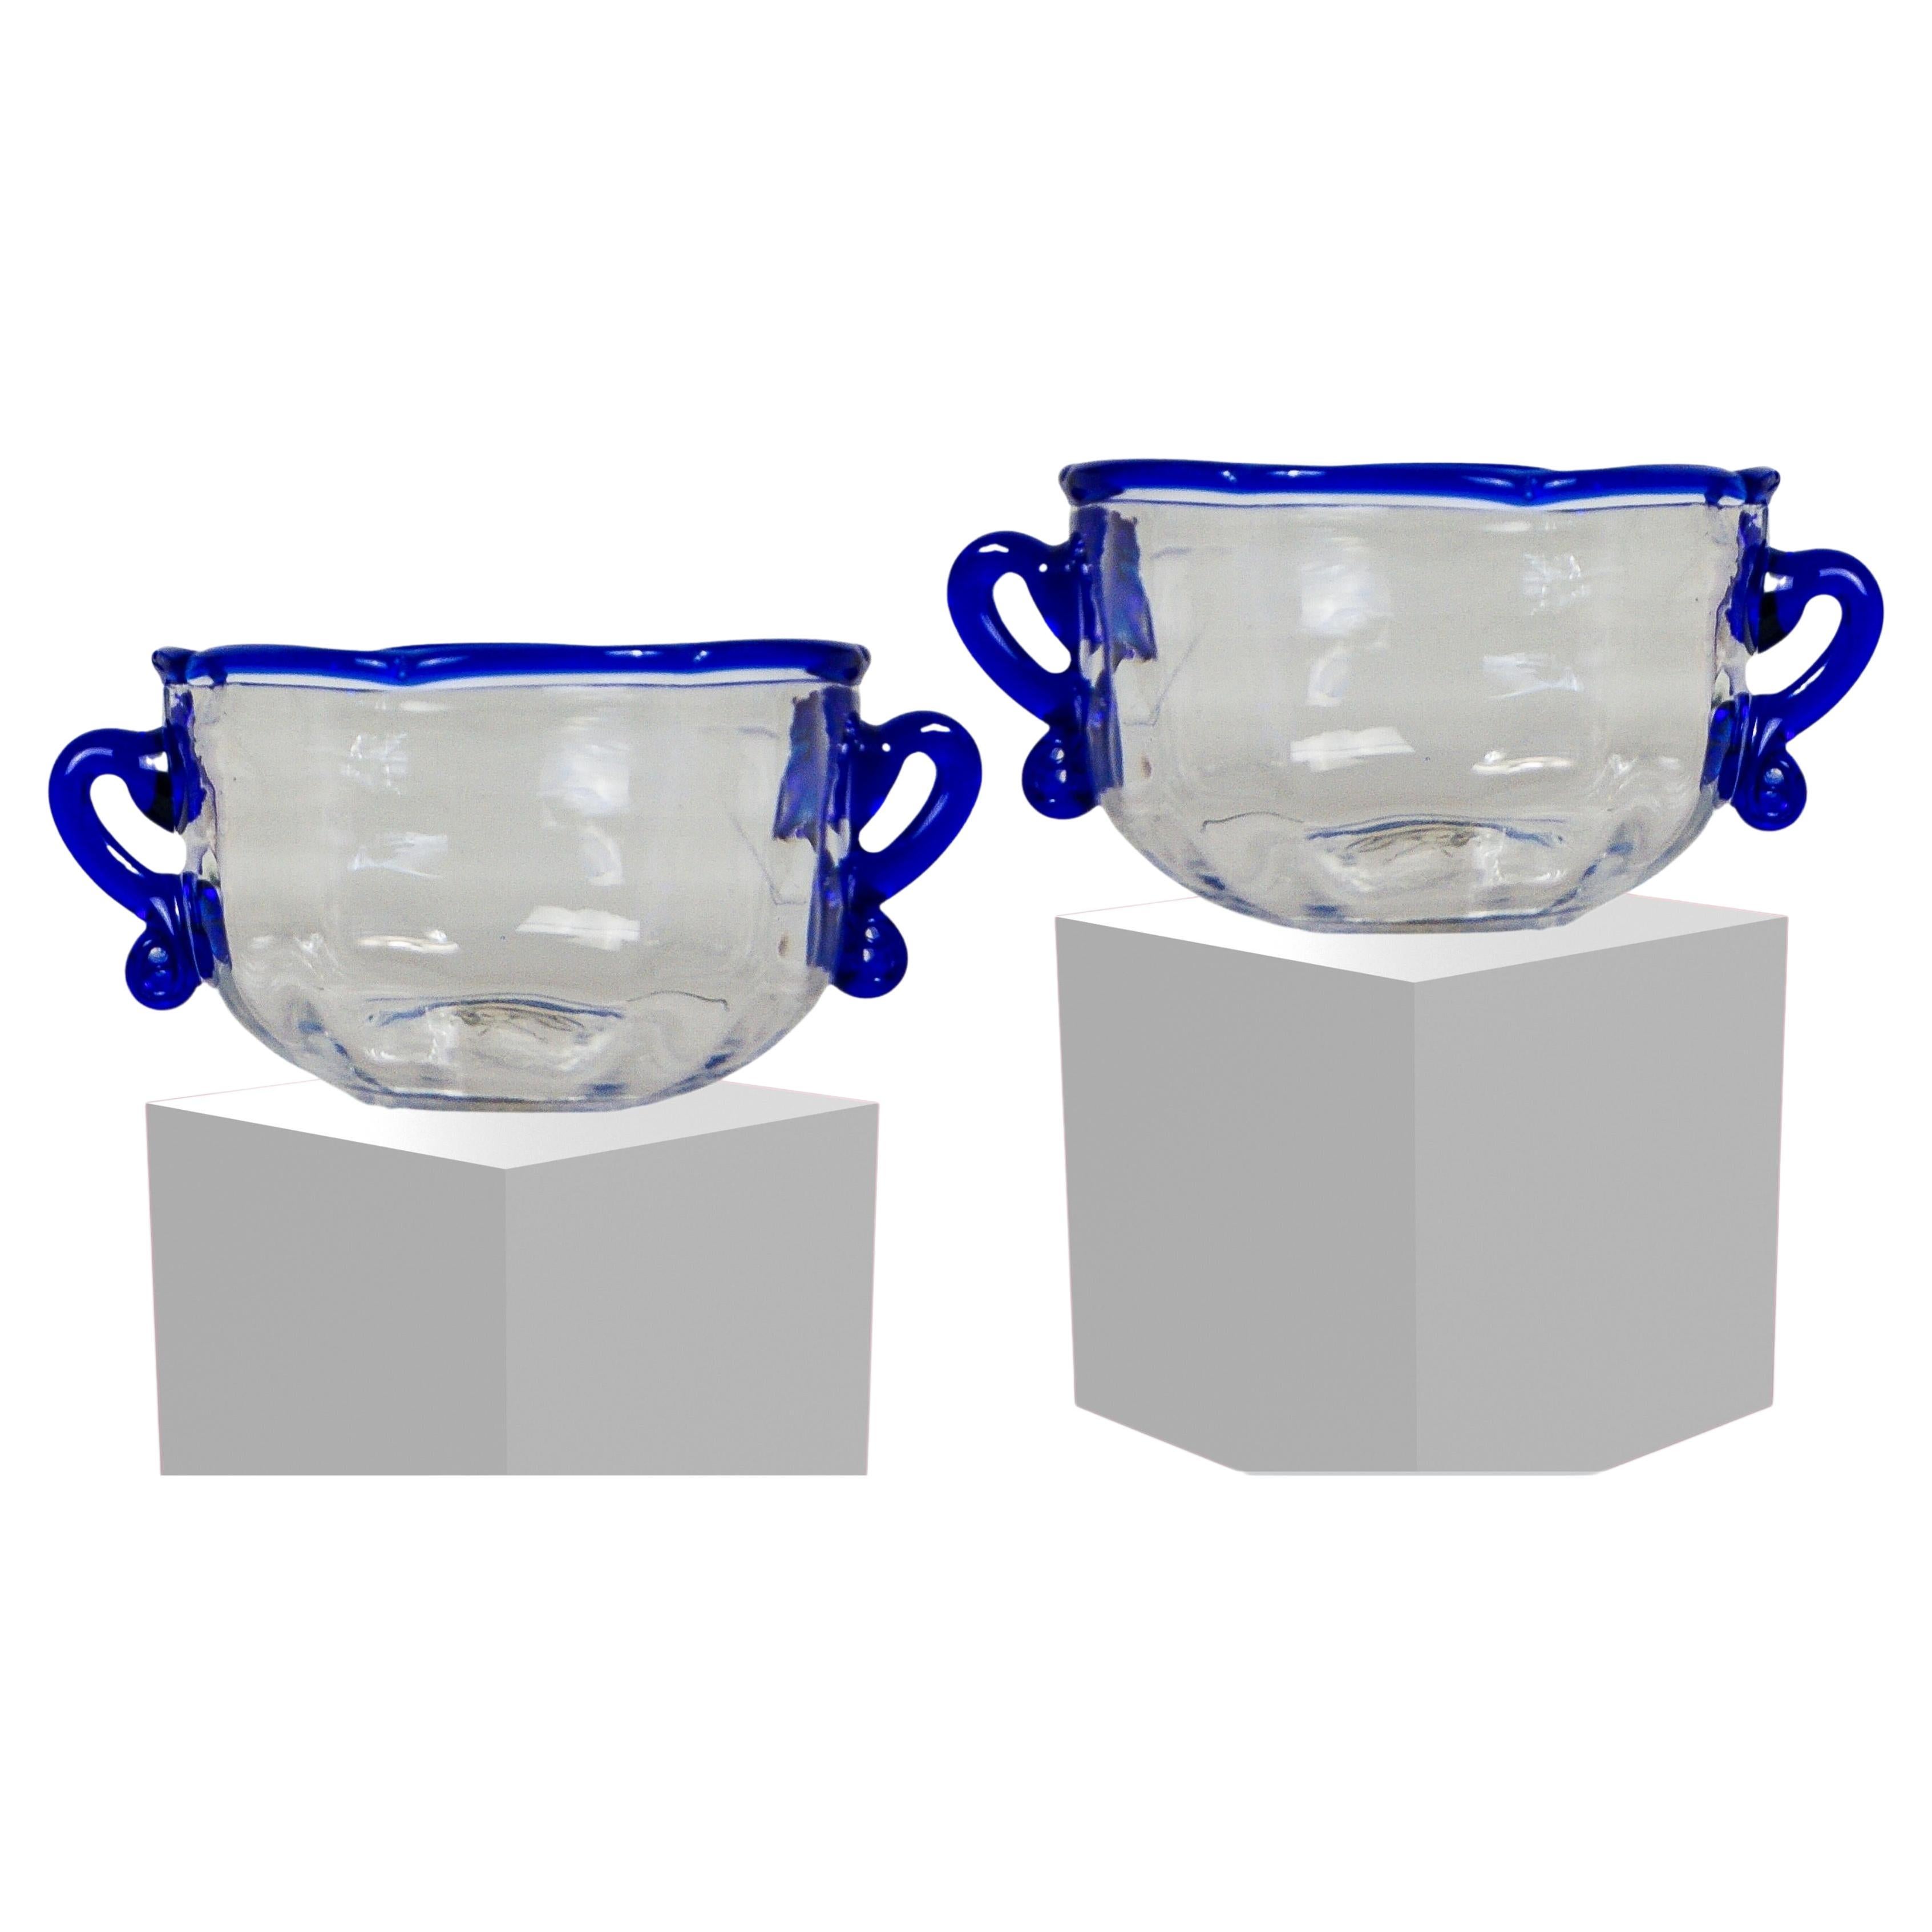 Ensemble de 2 bols en verre Wrythen de style britannique géorgien.
Datant de la fin du XVIIIe siècle et du début du XIXe siècle, vers 1800.
Verre transparent texturé et nervuré, avec bord bleu appliqué et doubles poignées bleues.
De taille